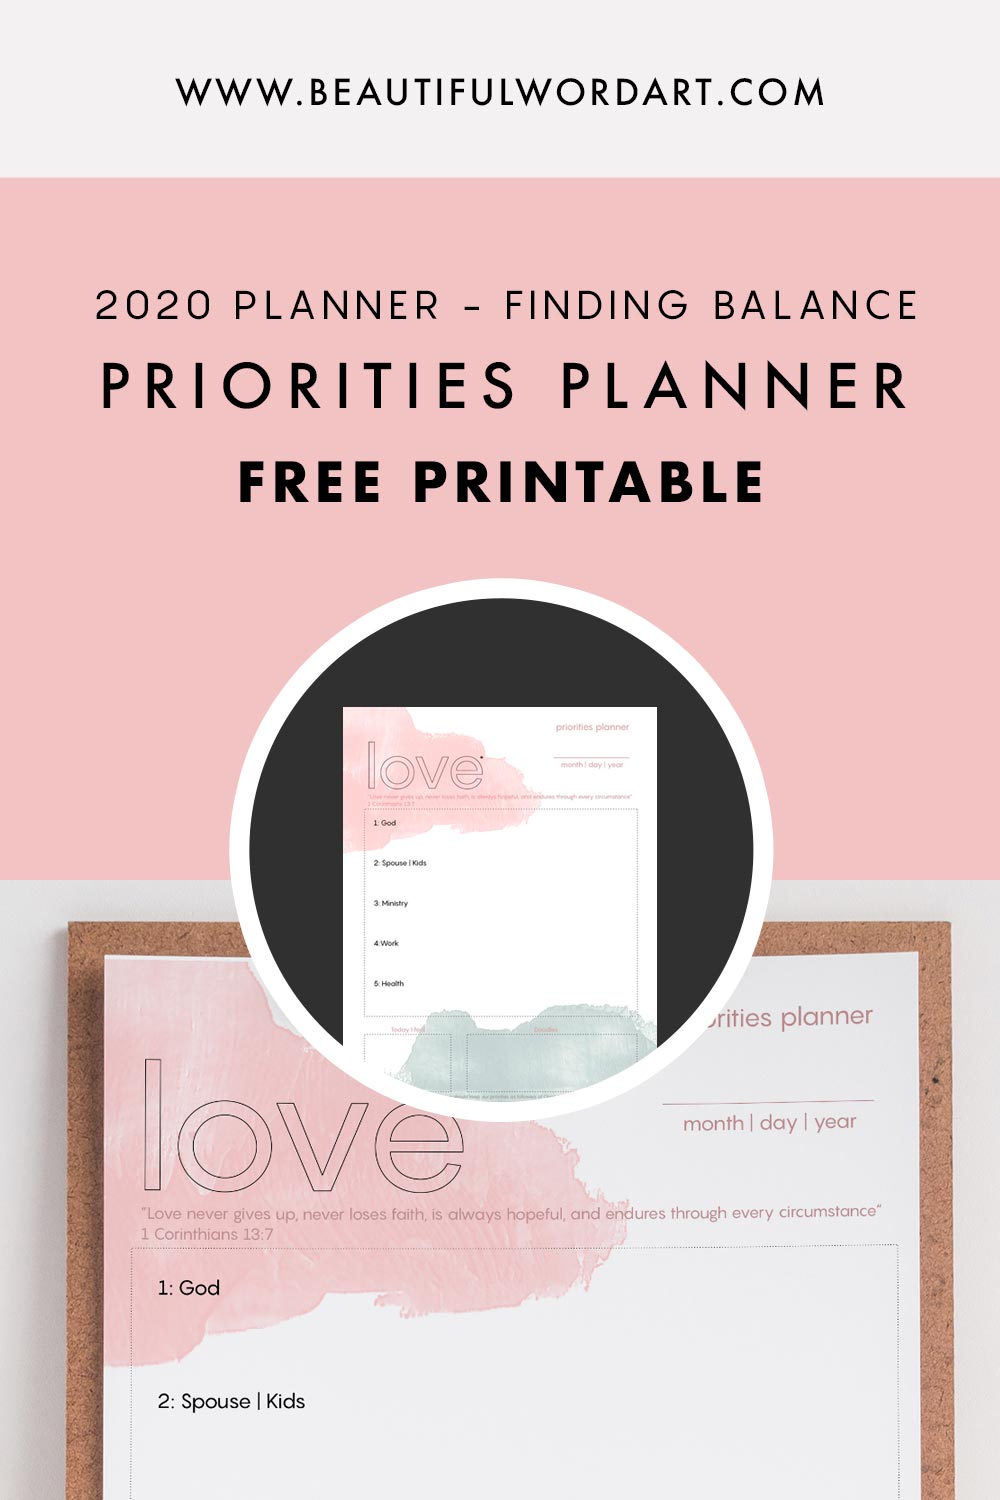 2020 PLANNER Priorities Planner Free Printable - Beautiful Word Blog